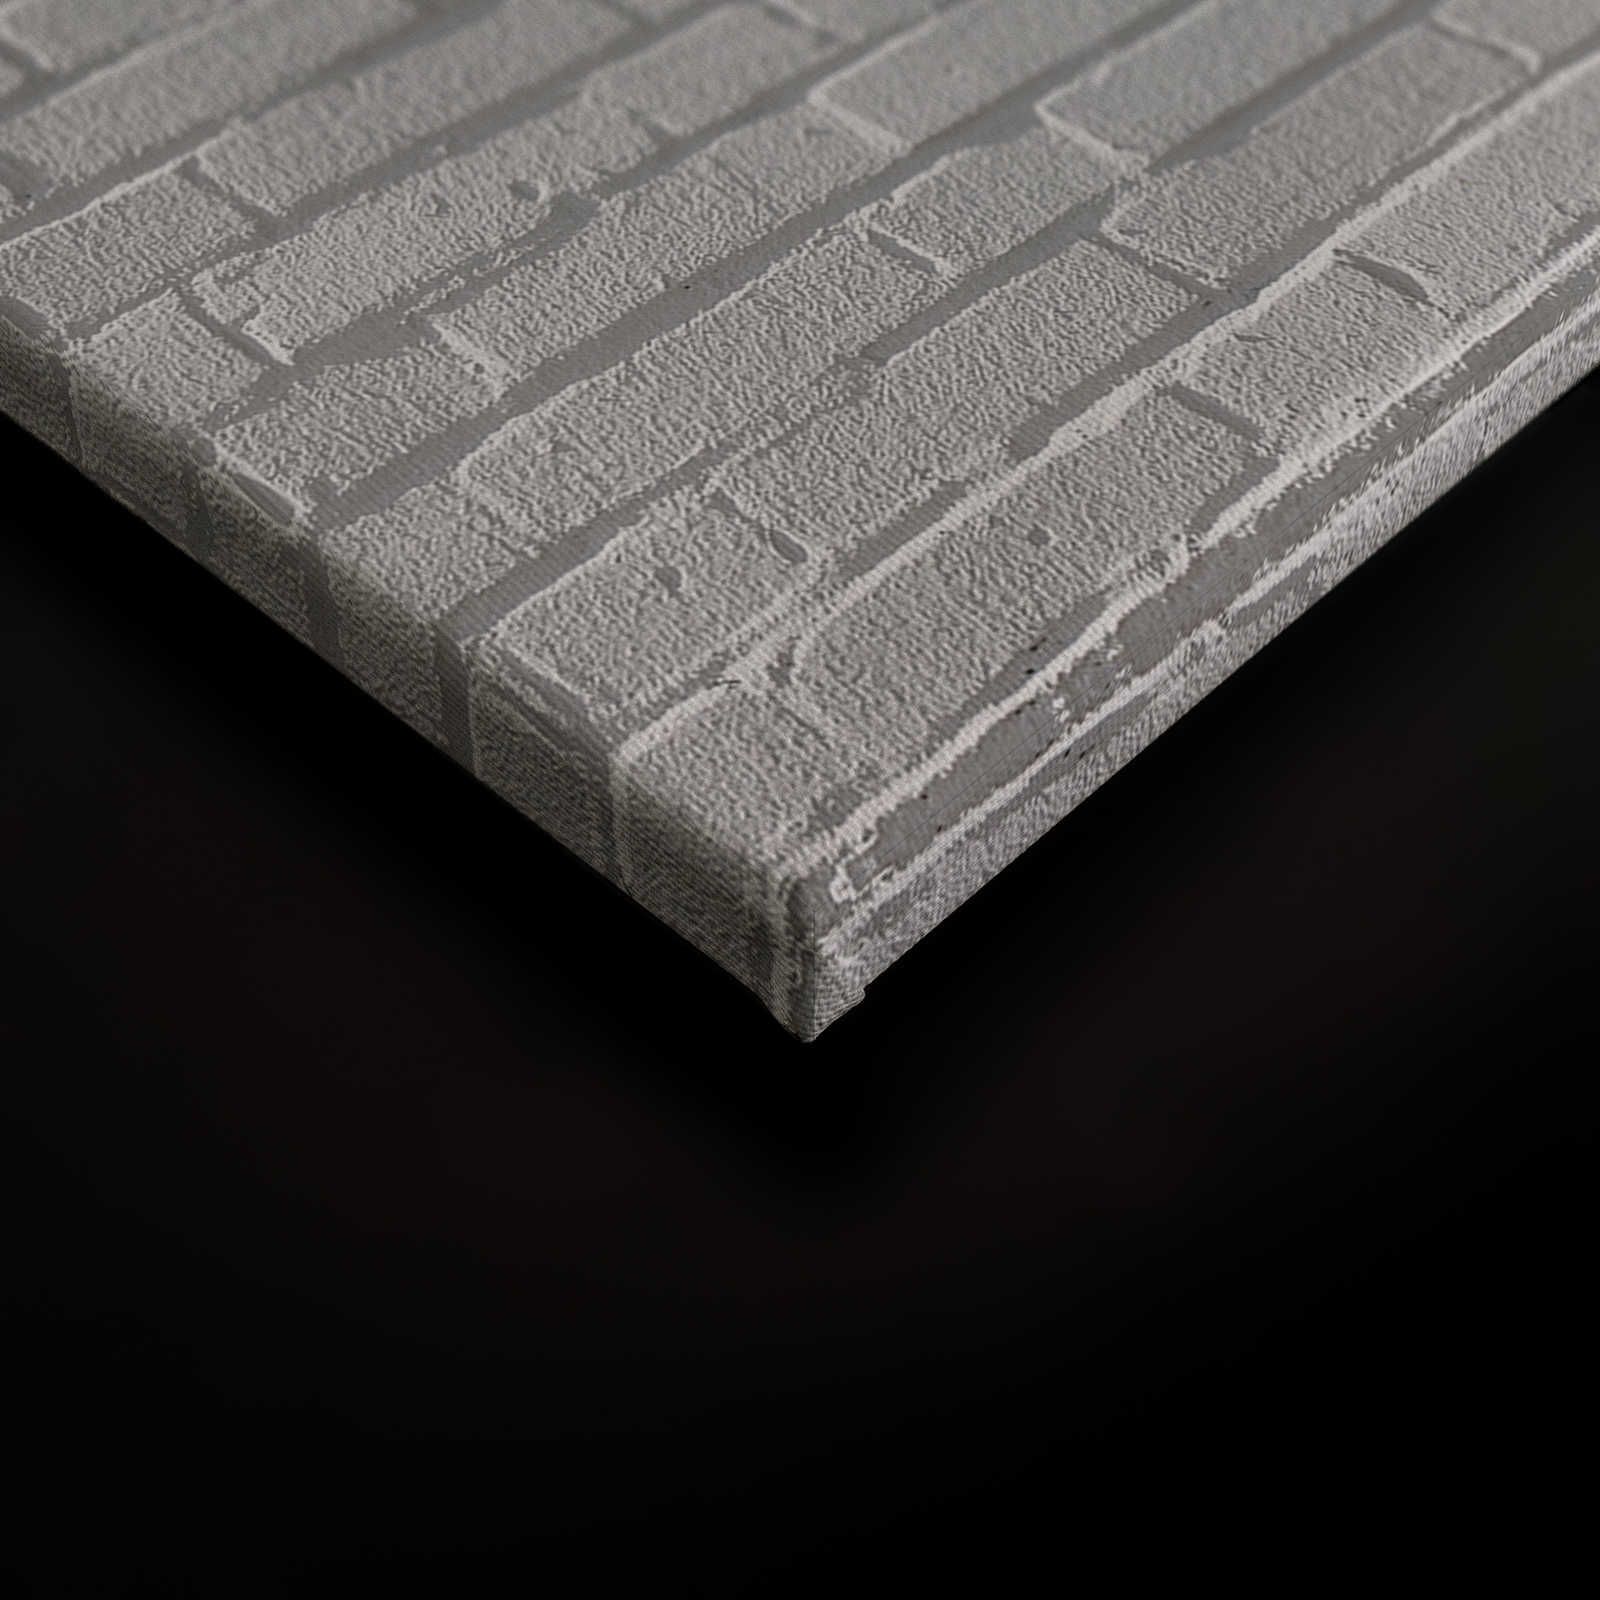             Toile Mur de briques gris look 3D - 0,90 m x 0,60 m
        